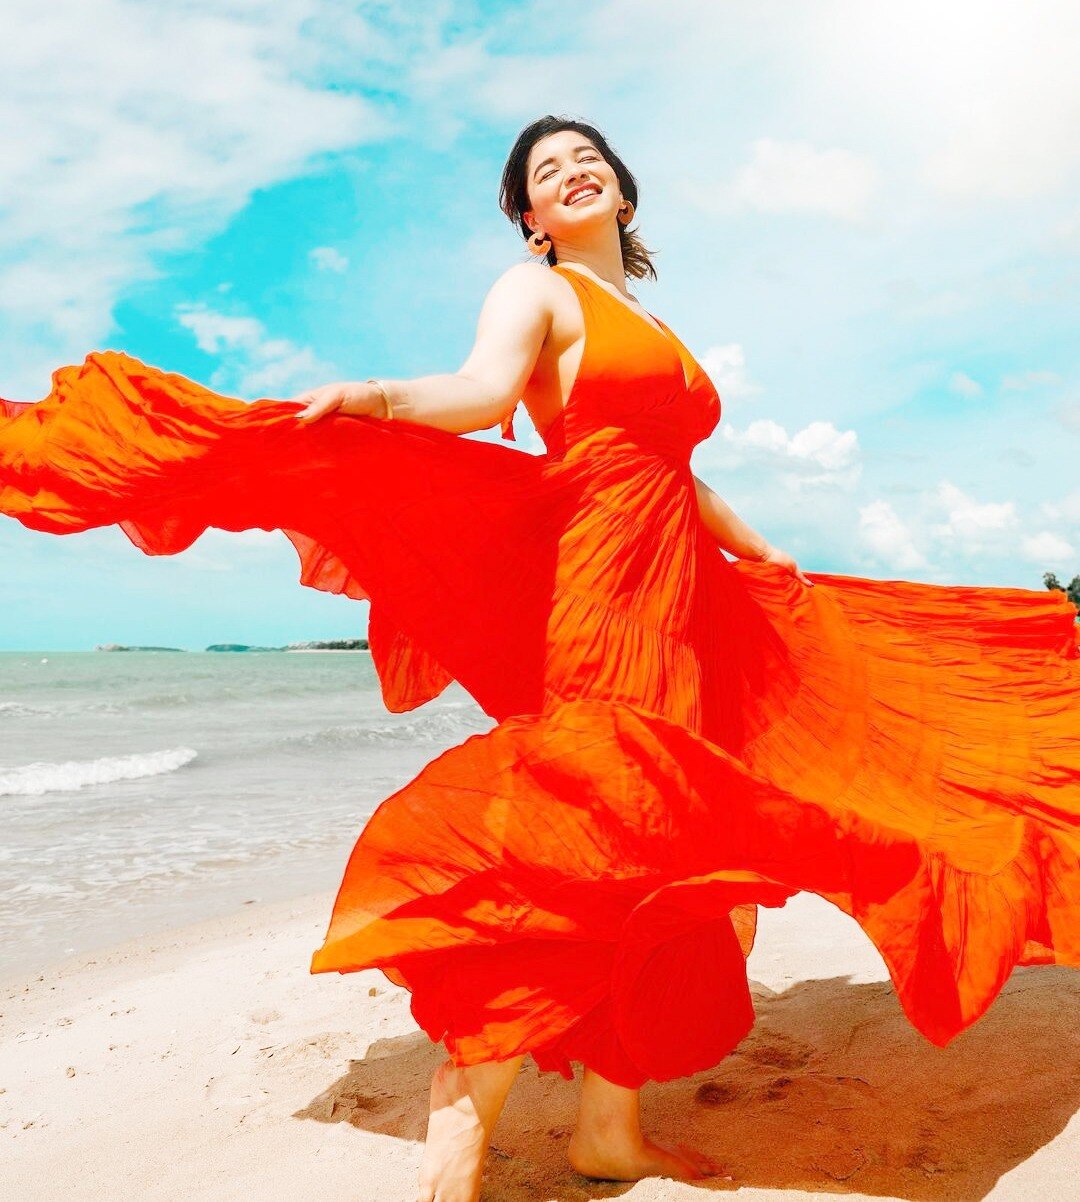 Sara Tendulkars gerua moment in this stunning orange dress